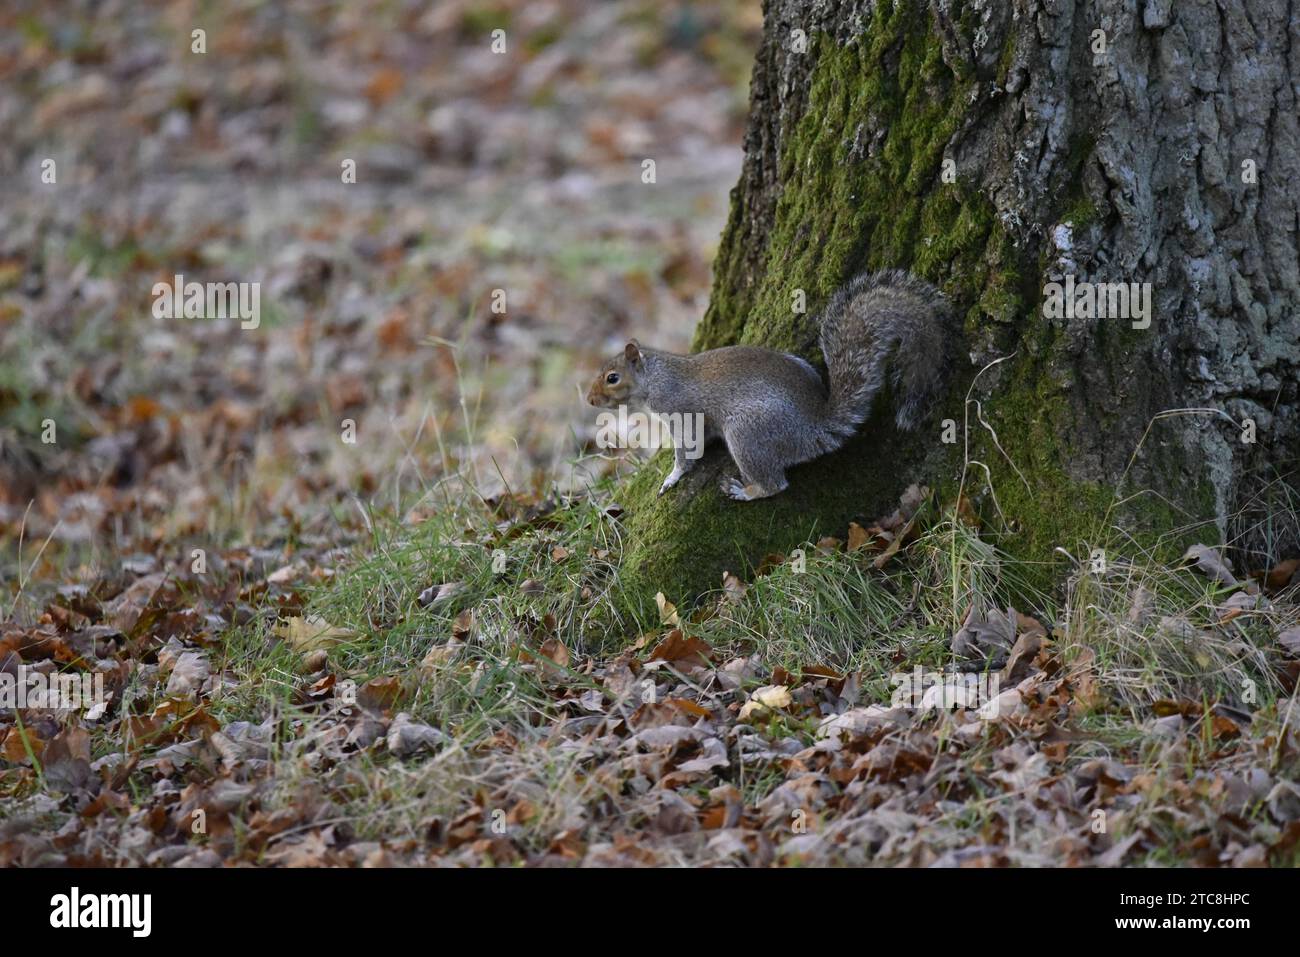 Scoiattolo grigio (Sciurus carolinensis) che si muove lungo la base di un tronco di albero Mossy verde a destra dell'immagine, arcata di coda, circondata da foglie autunnali, Regno Unito Foto Stock